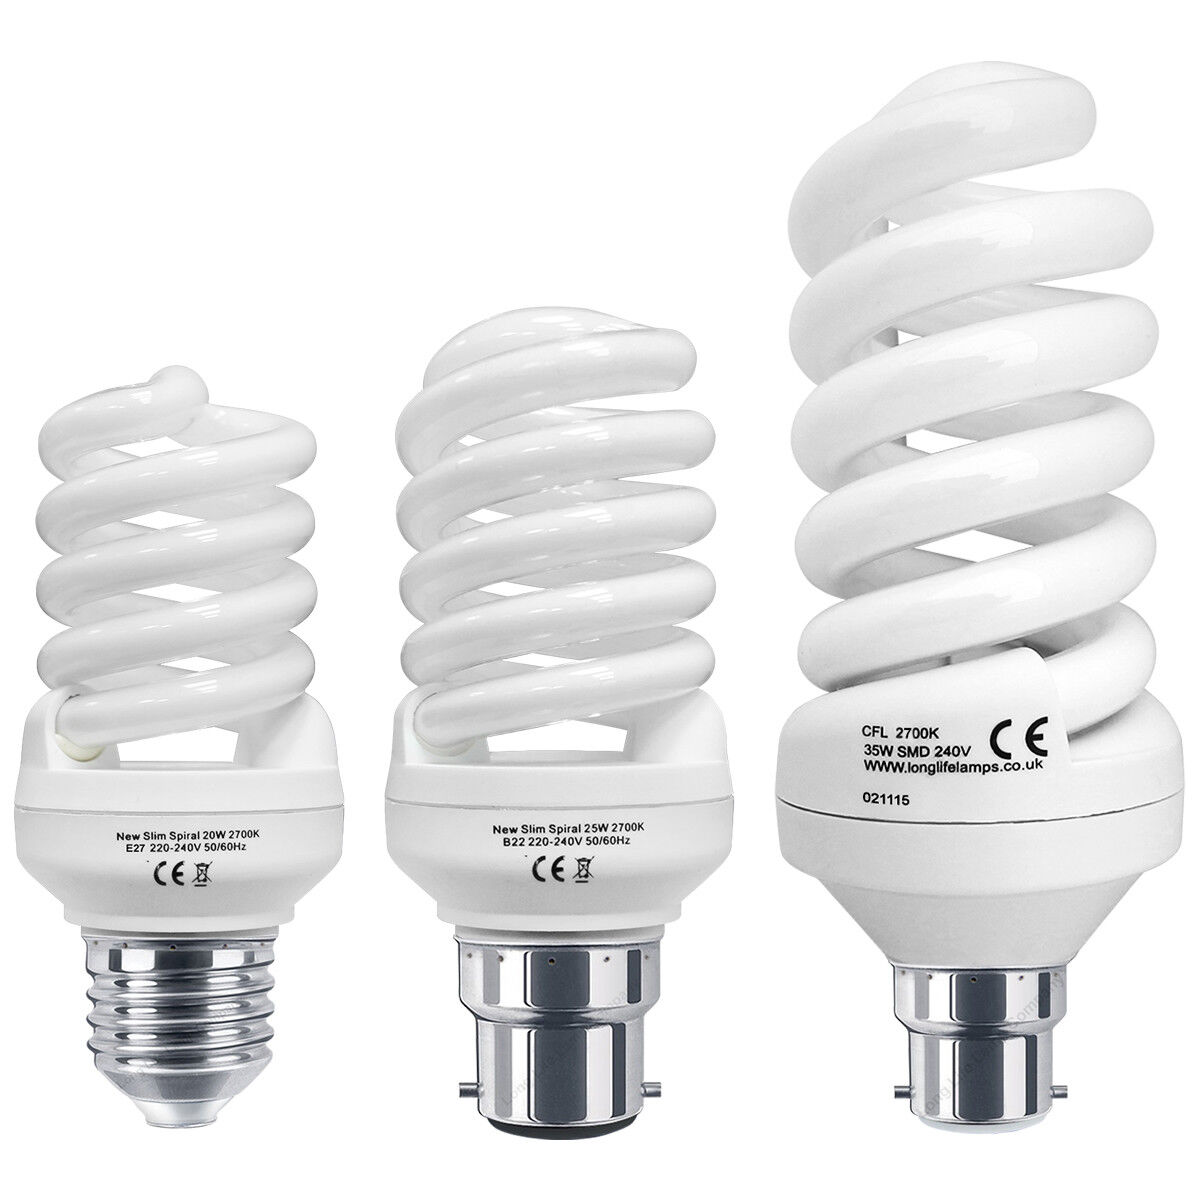 Som svar på Økologi barm Energy Saving Spiral Light Bulb in 20w, 25w, 35w Cap B22 or E27 | eBay